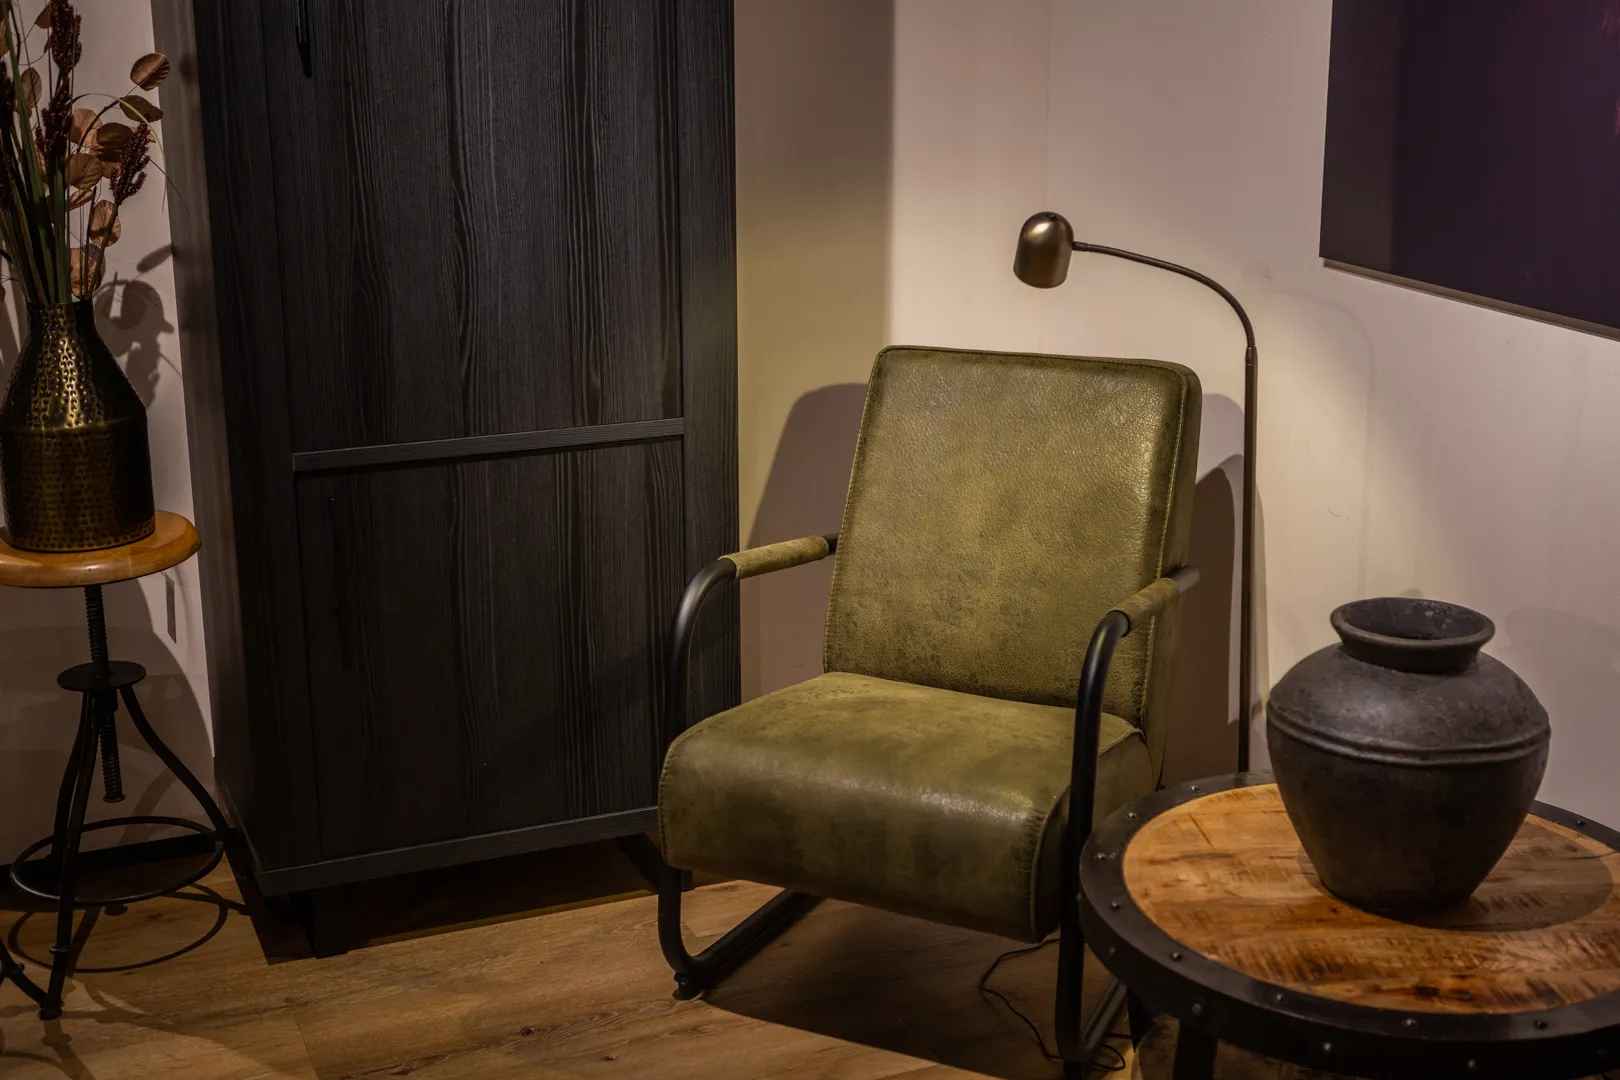 Klassieke woonstijl groene fauteuil en zwarte kast